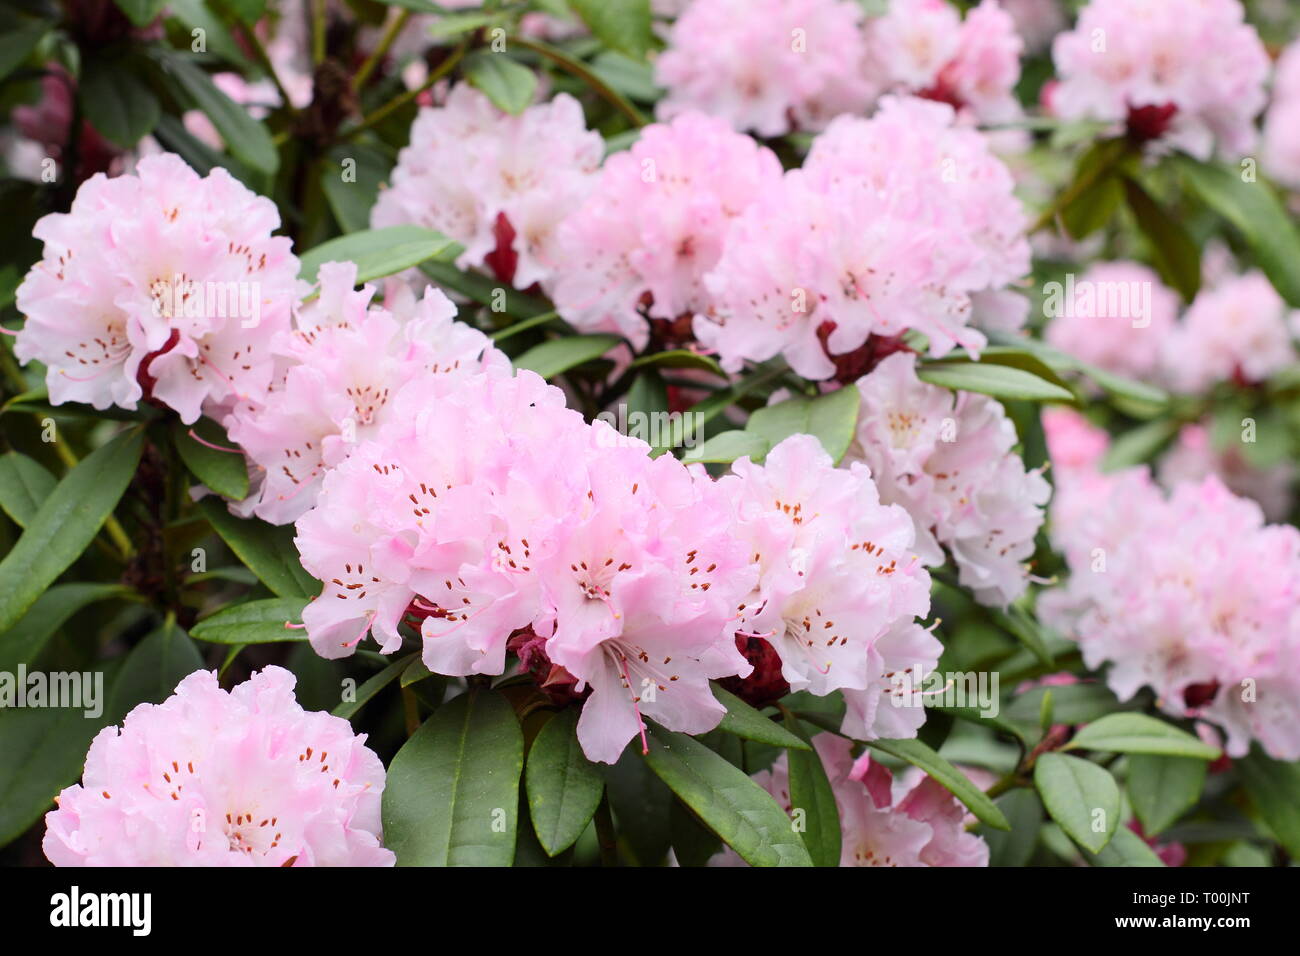 Rhododendron 'Christmas Cheer'. Fleurs de rhododendron floraison précoce, 'Christmas Cheer' dans un jardin anglais - fin février, UK Banque D'Images